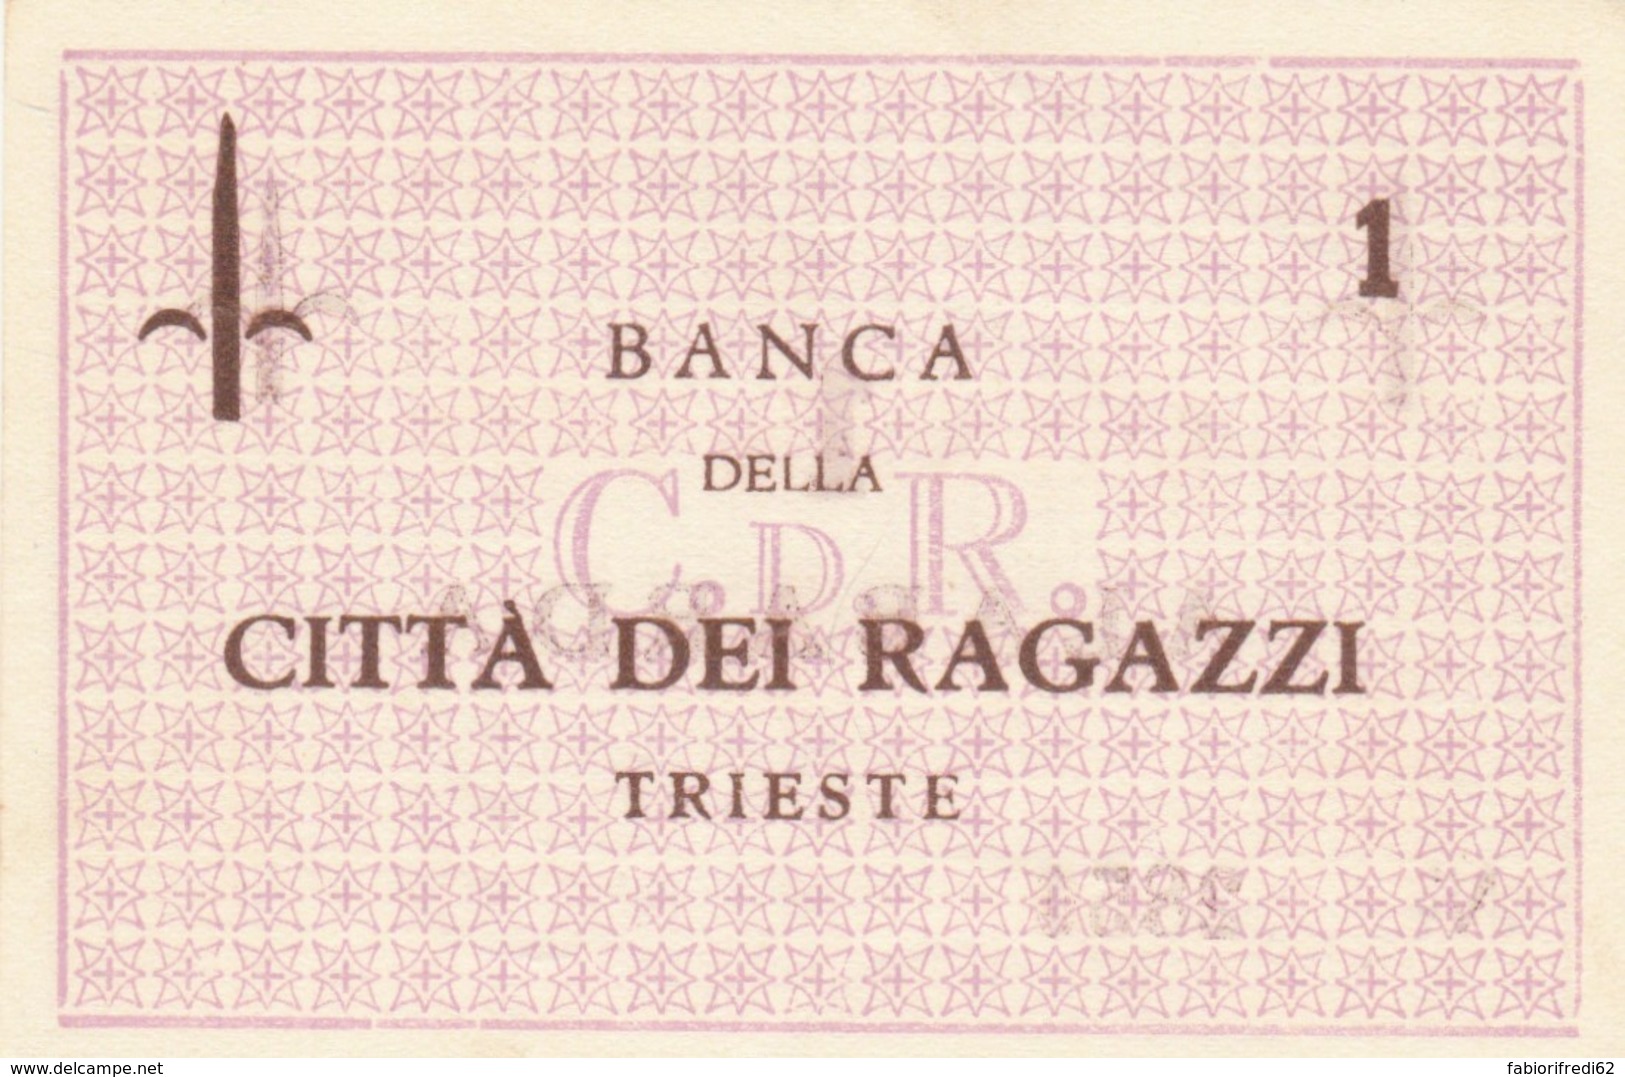 BUONO  BANCA CITTA RAGAZZI TRIESTE 1 UNC (BN364 - [10] Checks And Mini-checks